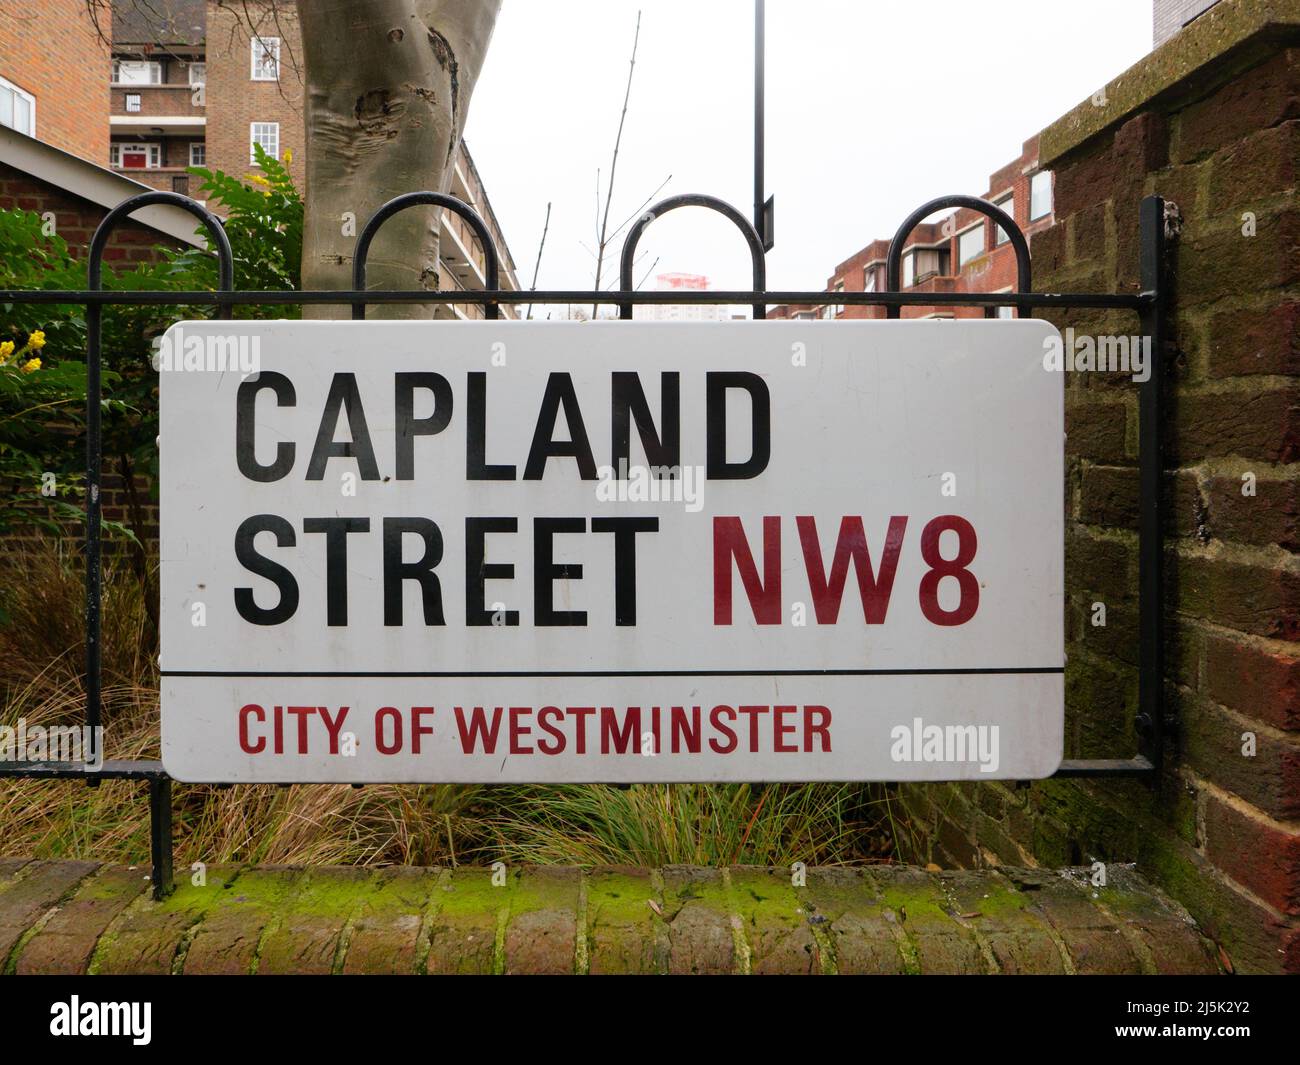 Londres, UK-22.12.21: Cartel de Capland Street, Ciudad de Westminster, Londres, Reino Unido Foto de stock